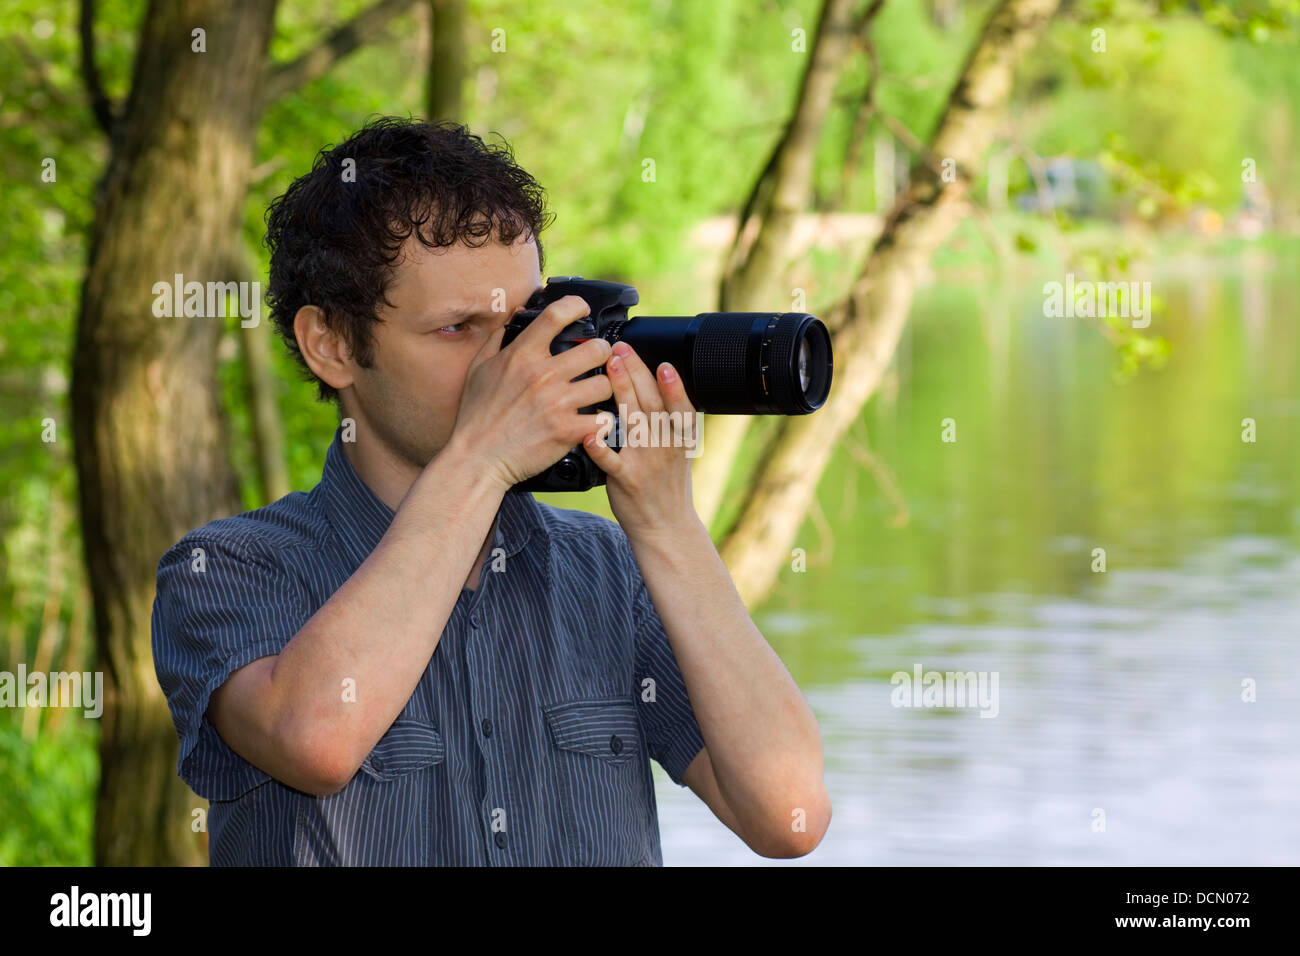 Hinterhältig Fotograf immer seinen Schuss der Natur Stockfoto